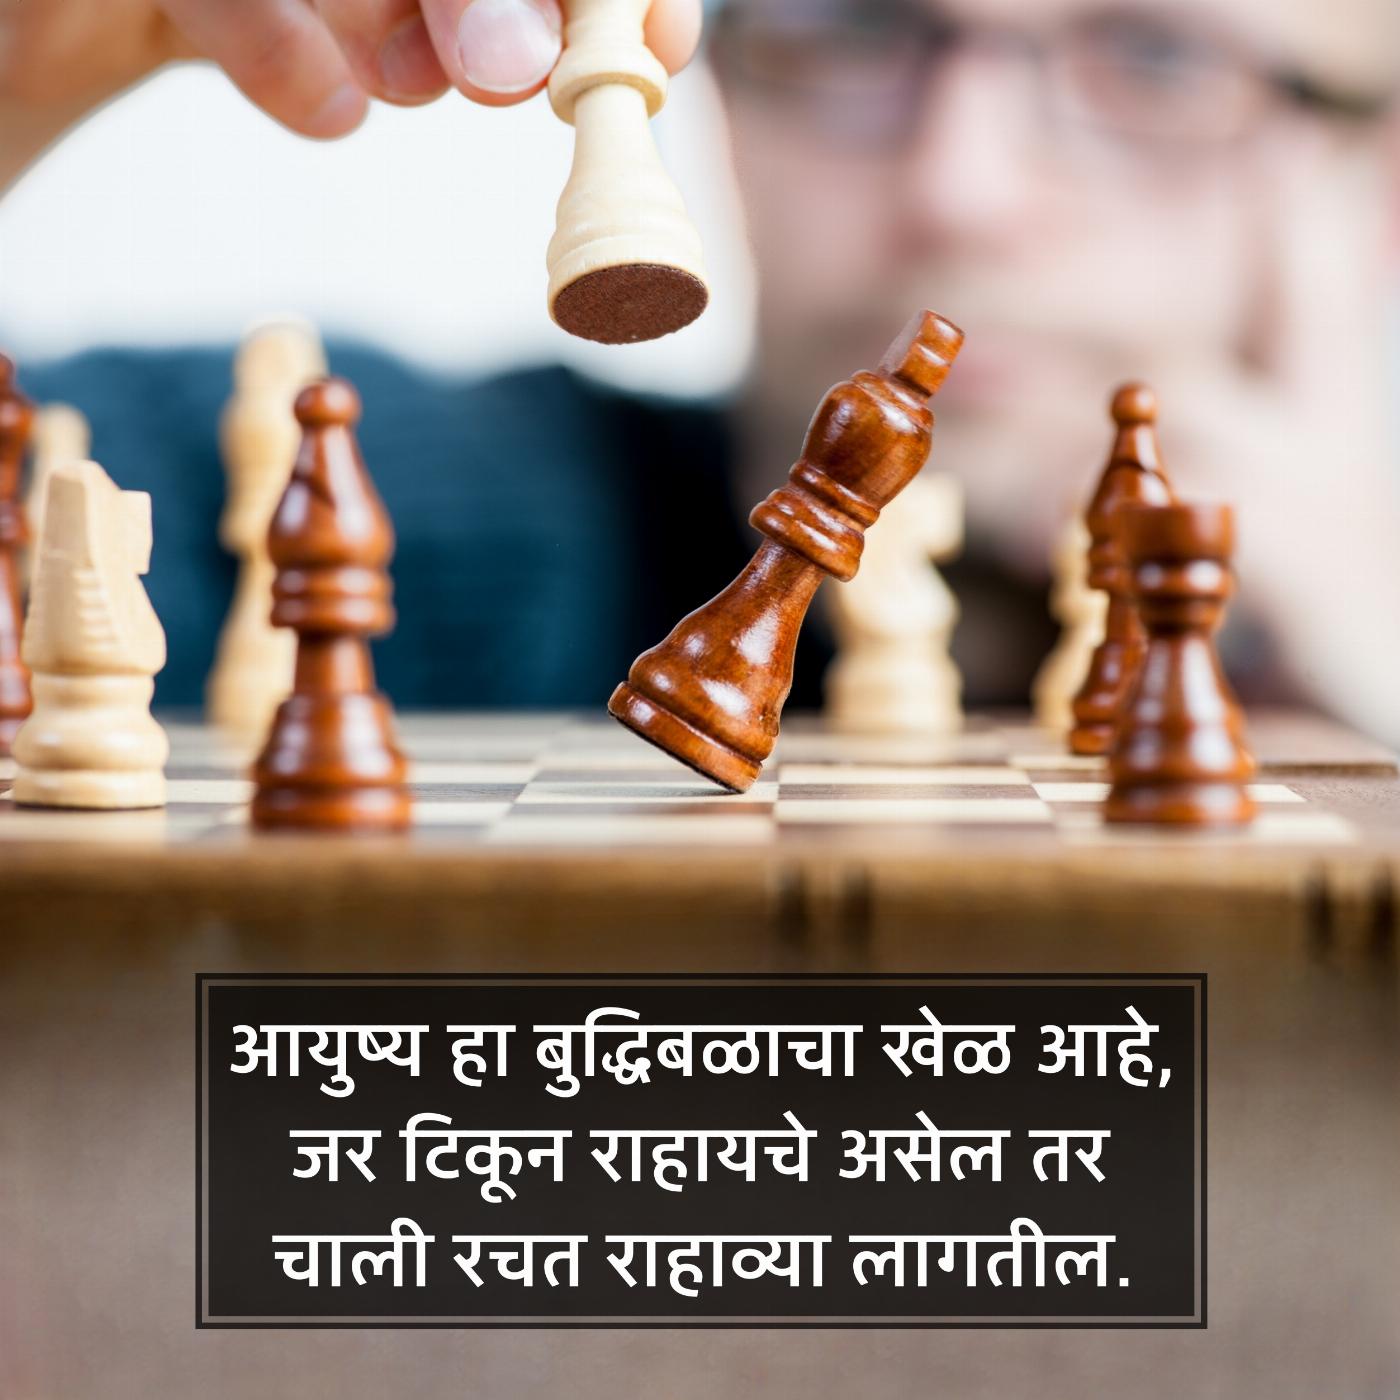 आयुष्य हा बुद्धिबळाचा खेळ आहे जर टिकून राहायचे असेल